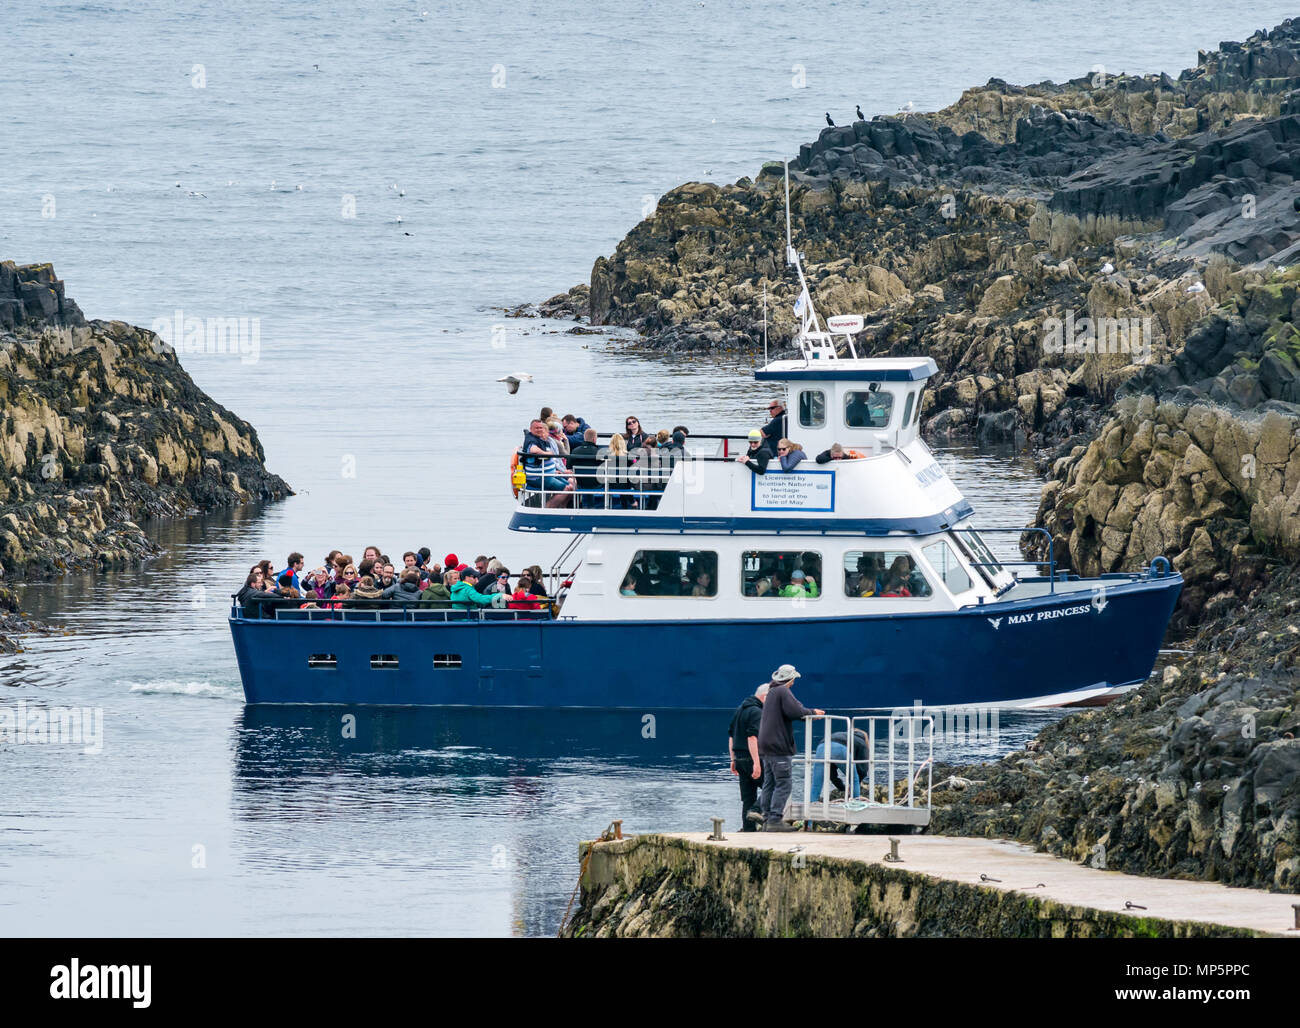 Passeggeri a maggio la principessa imbarcazione turistica, girando in partenza Isola di maggio, scozzese patrimonio naturale riserva naturale, Scotland, Regno Unito Foto Stock